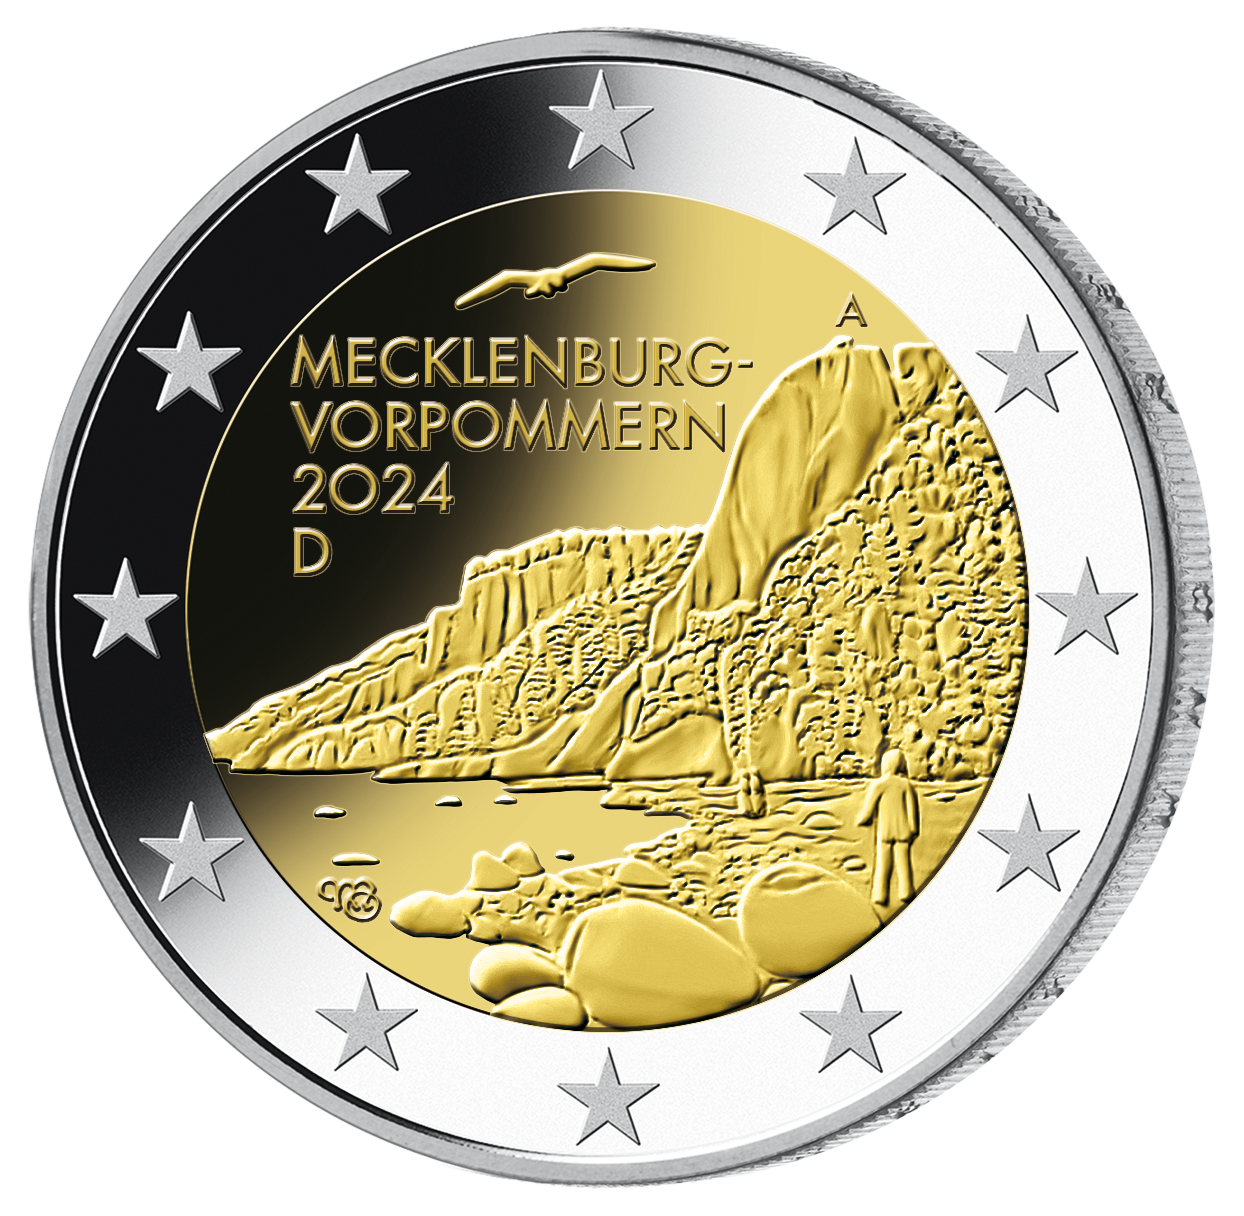 2-Euro-Komplettsatz 2024 "Mecklenburg-Vorpommern" – PP